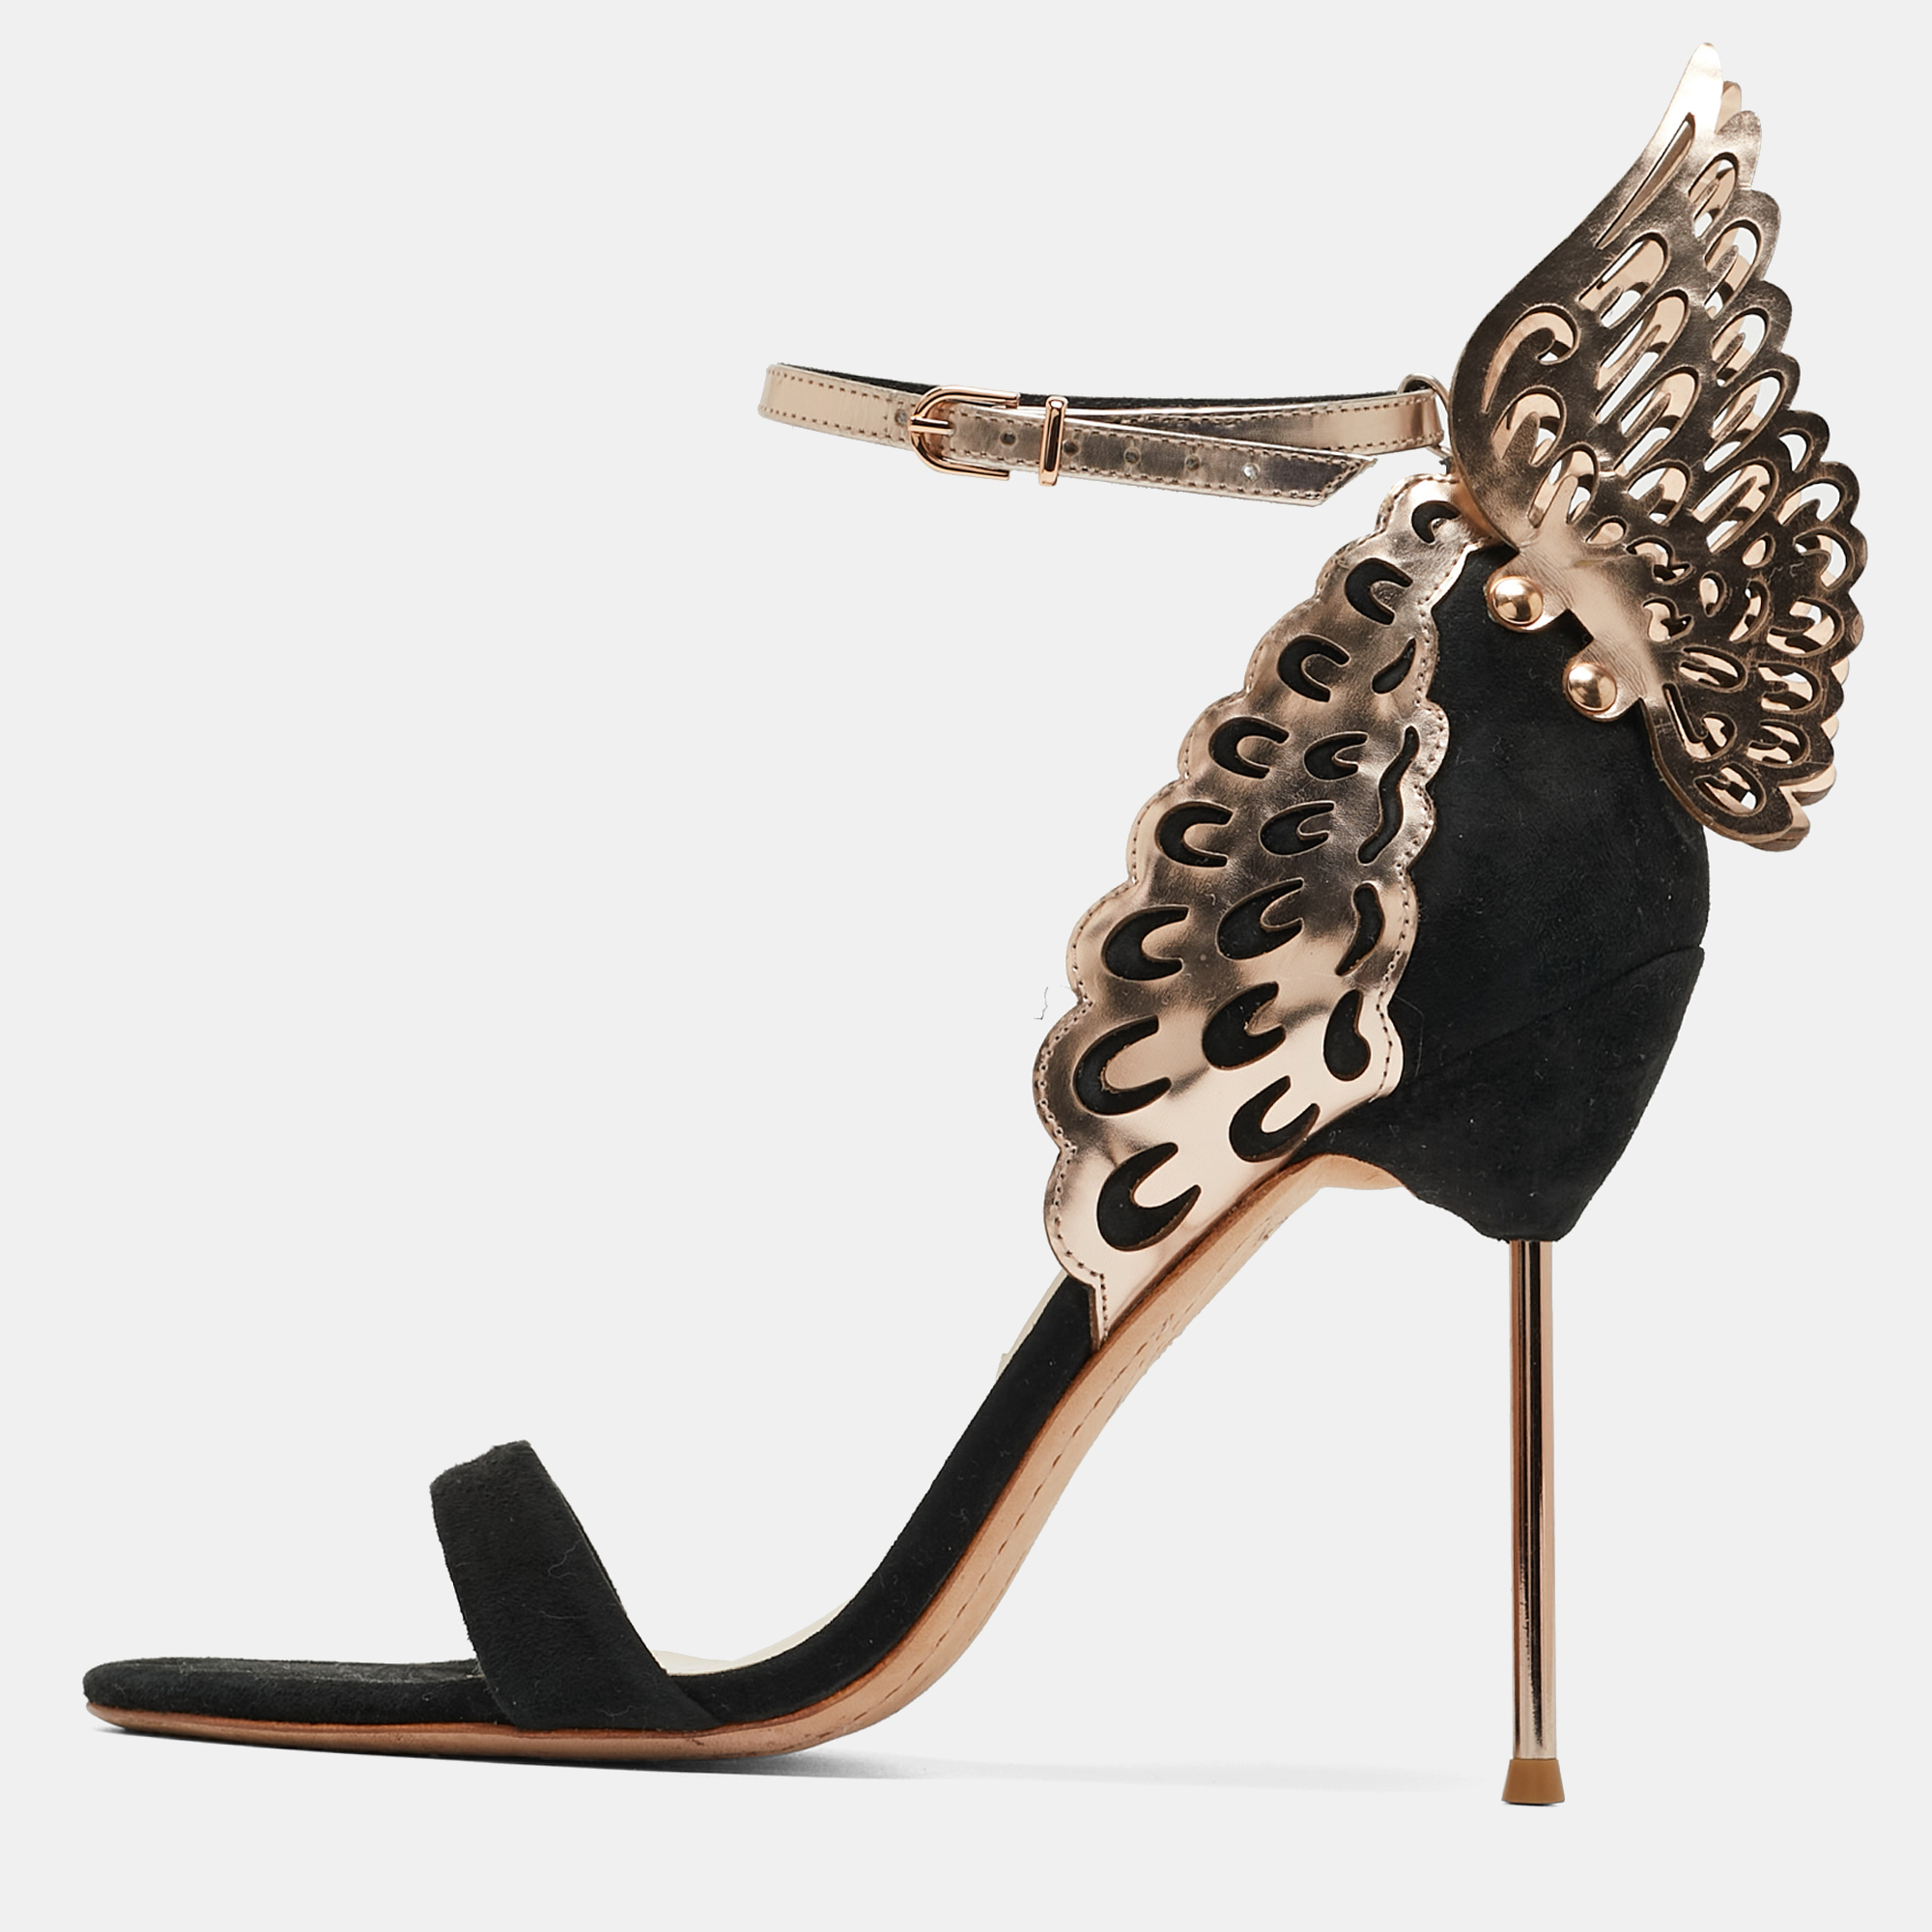 

Sophia Webster Black/Rose Gold Suede and Leather Evangeline Sandals Size